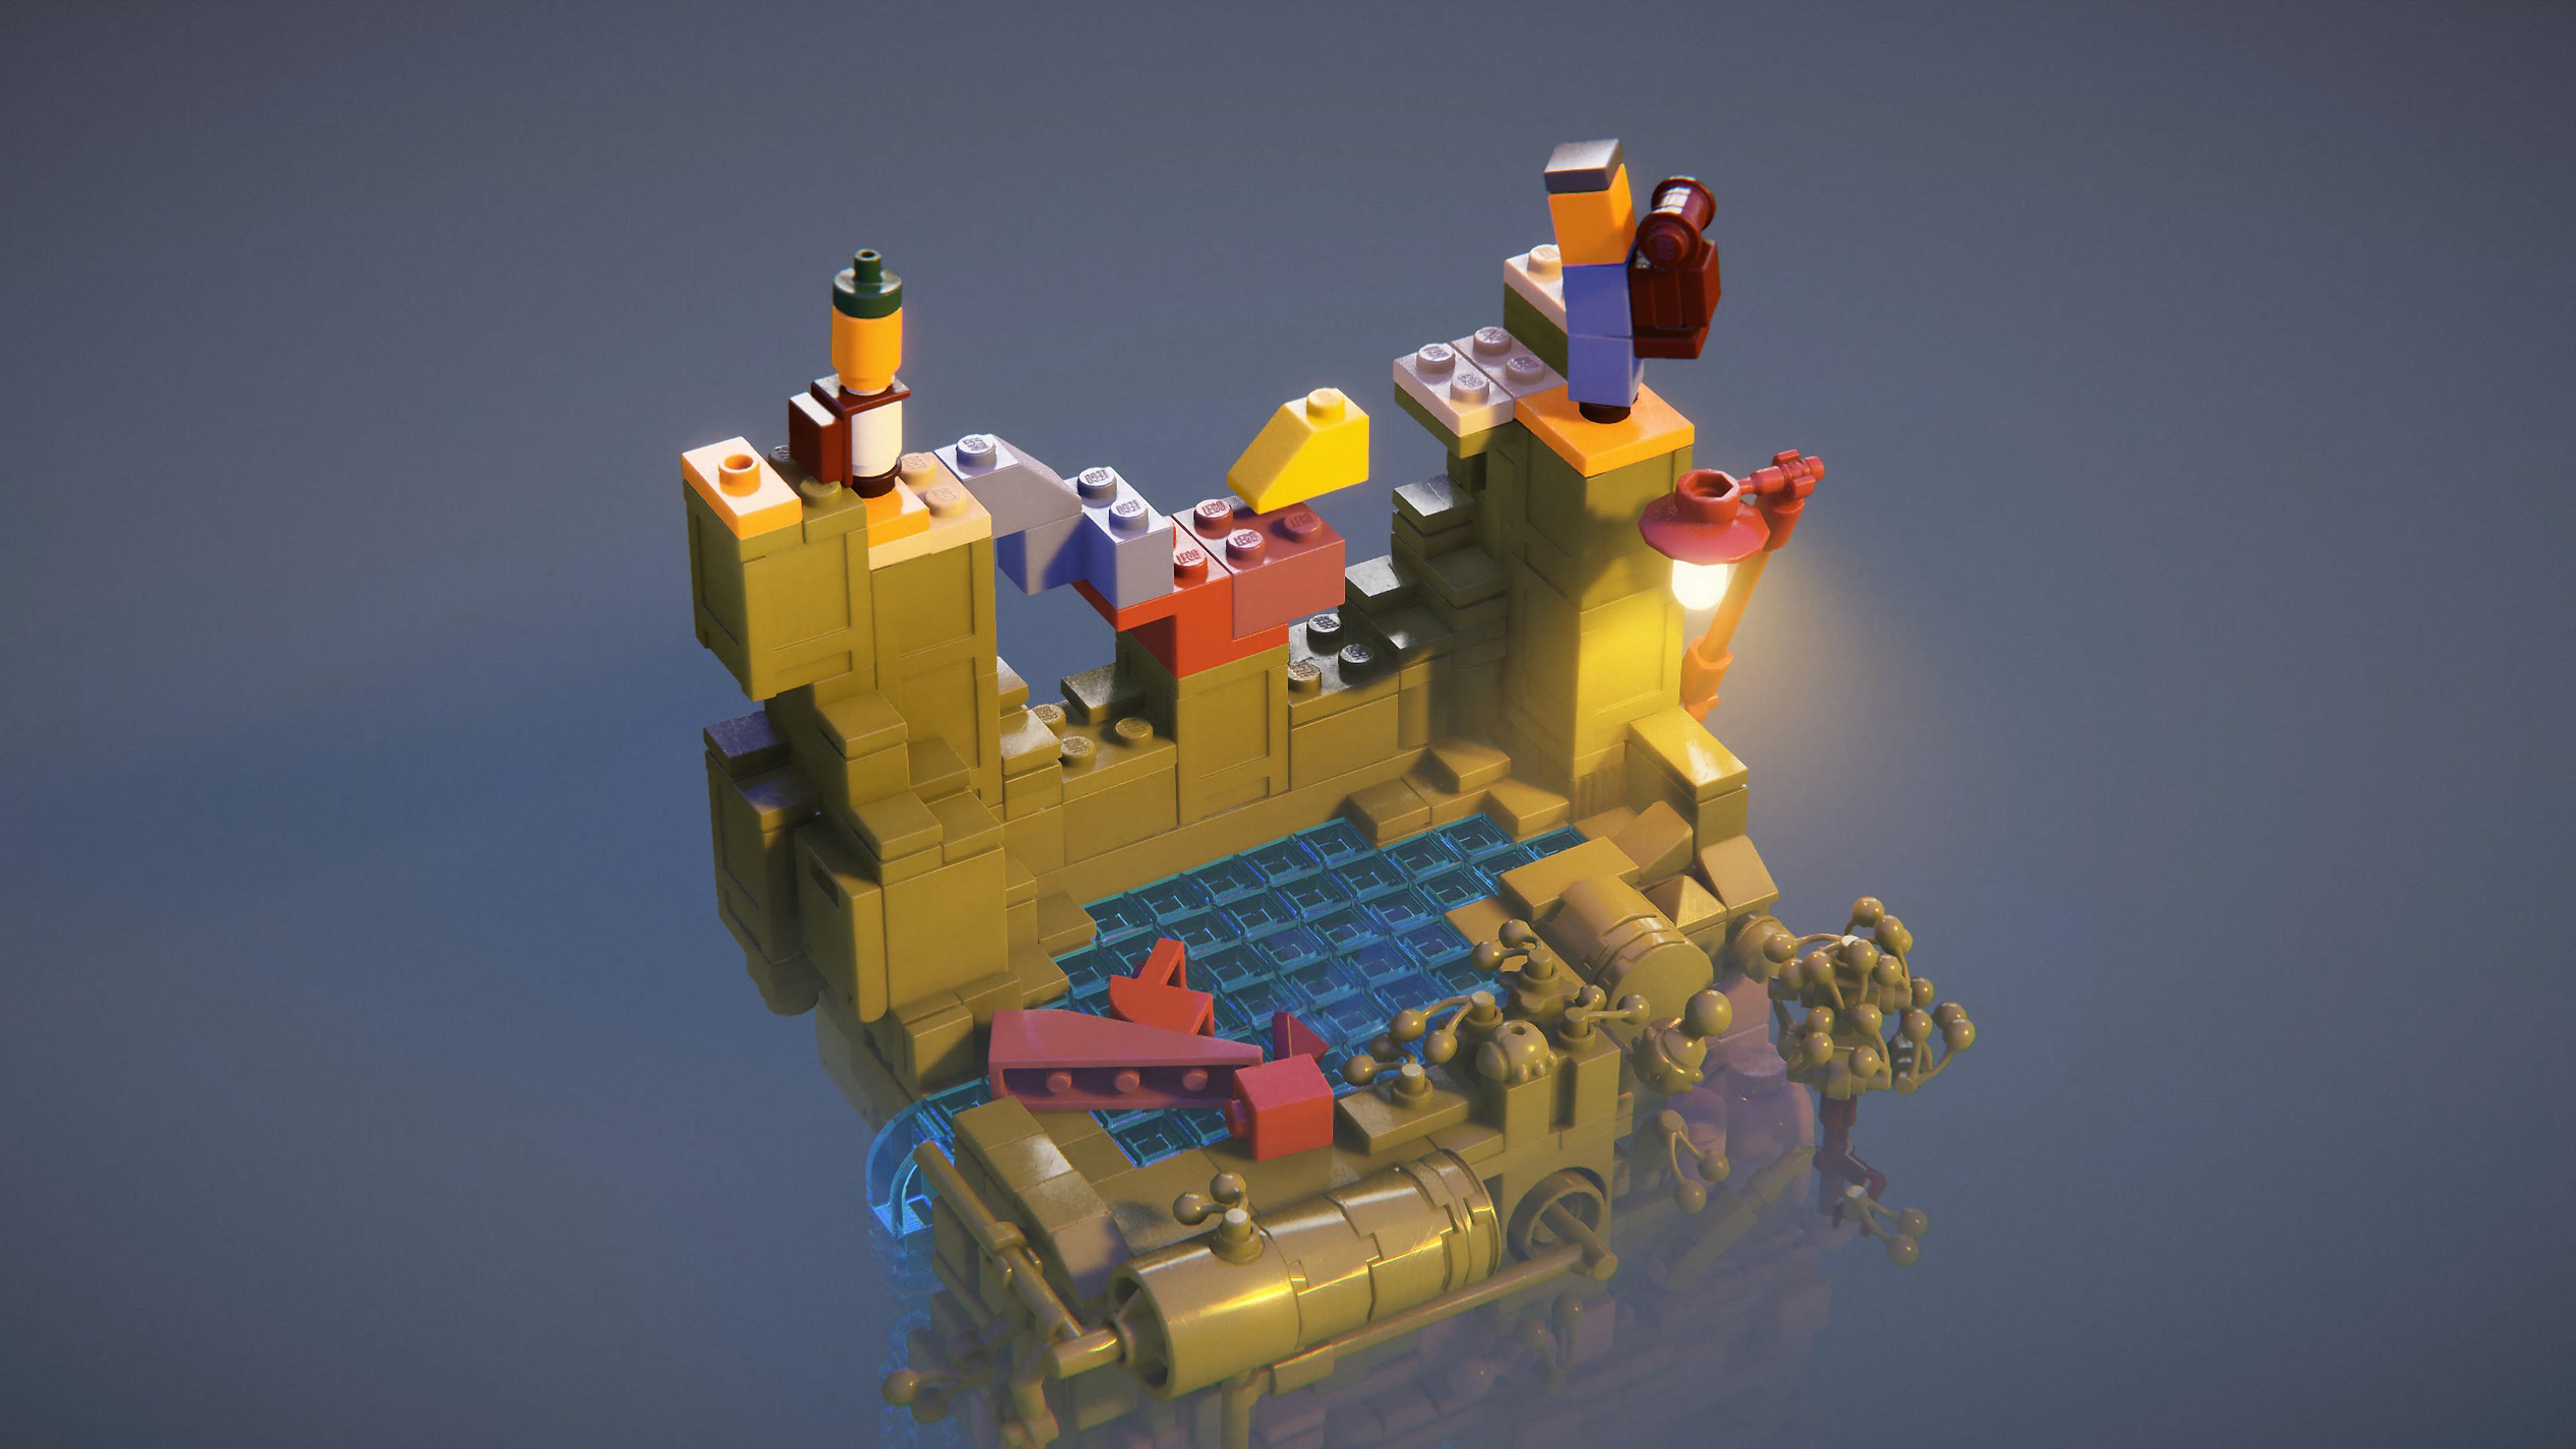 LEGO Builder's Journey-skærmbillede, der viser en LEGO-scene